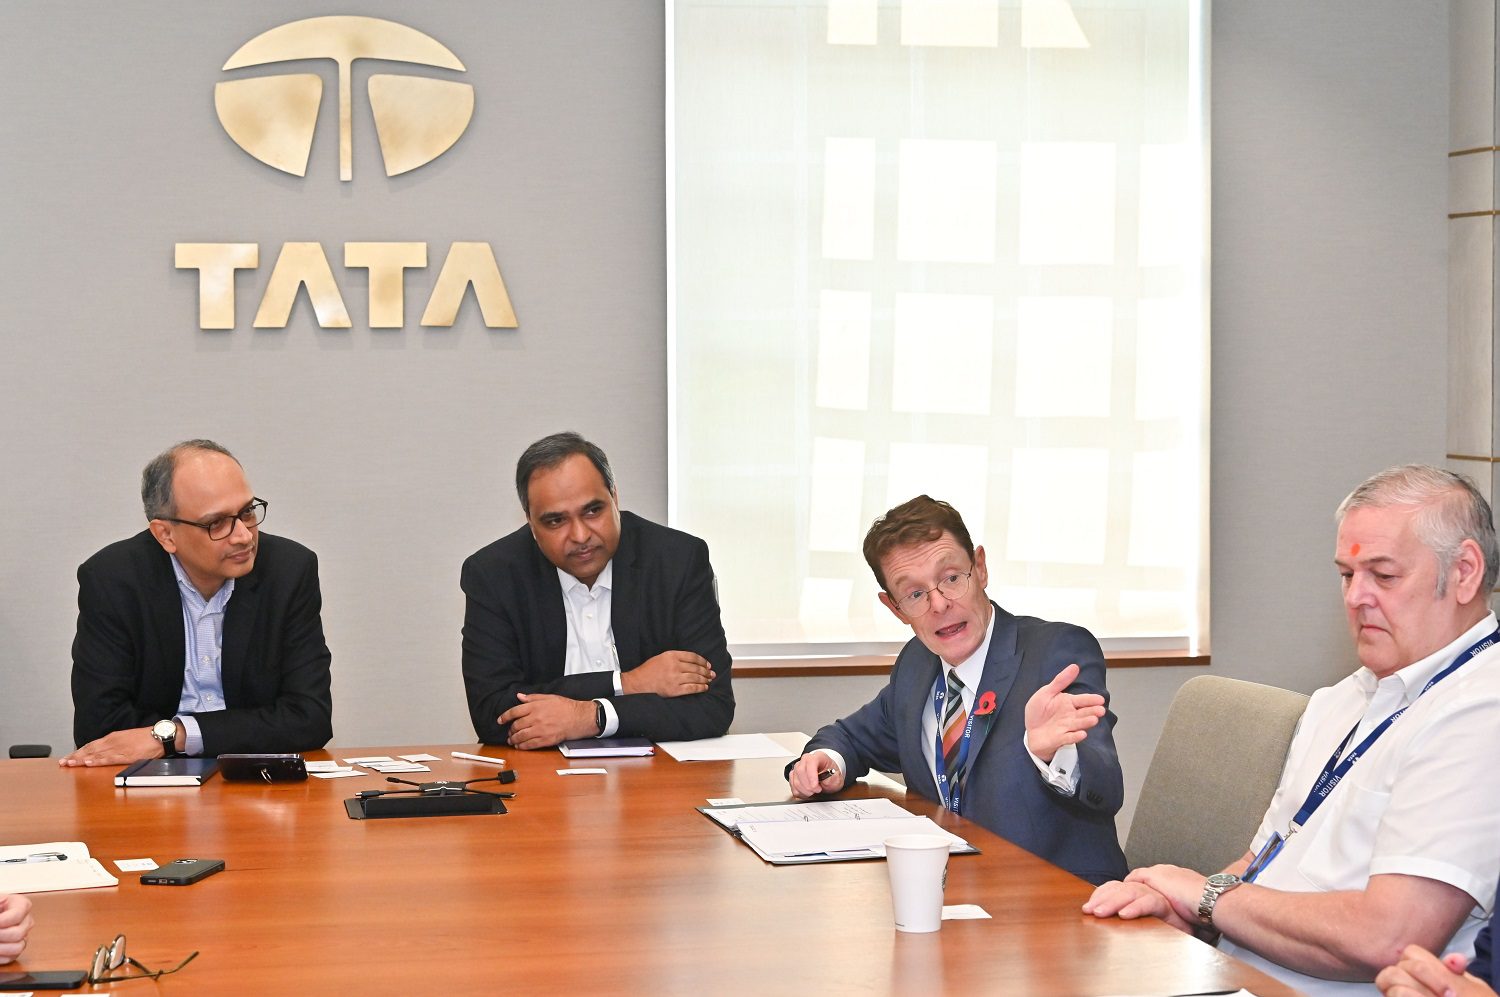 Mayor Andy Street and Cllr Ian Brookfield at Tata Motors